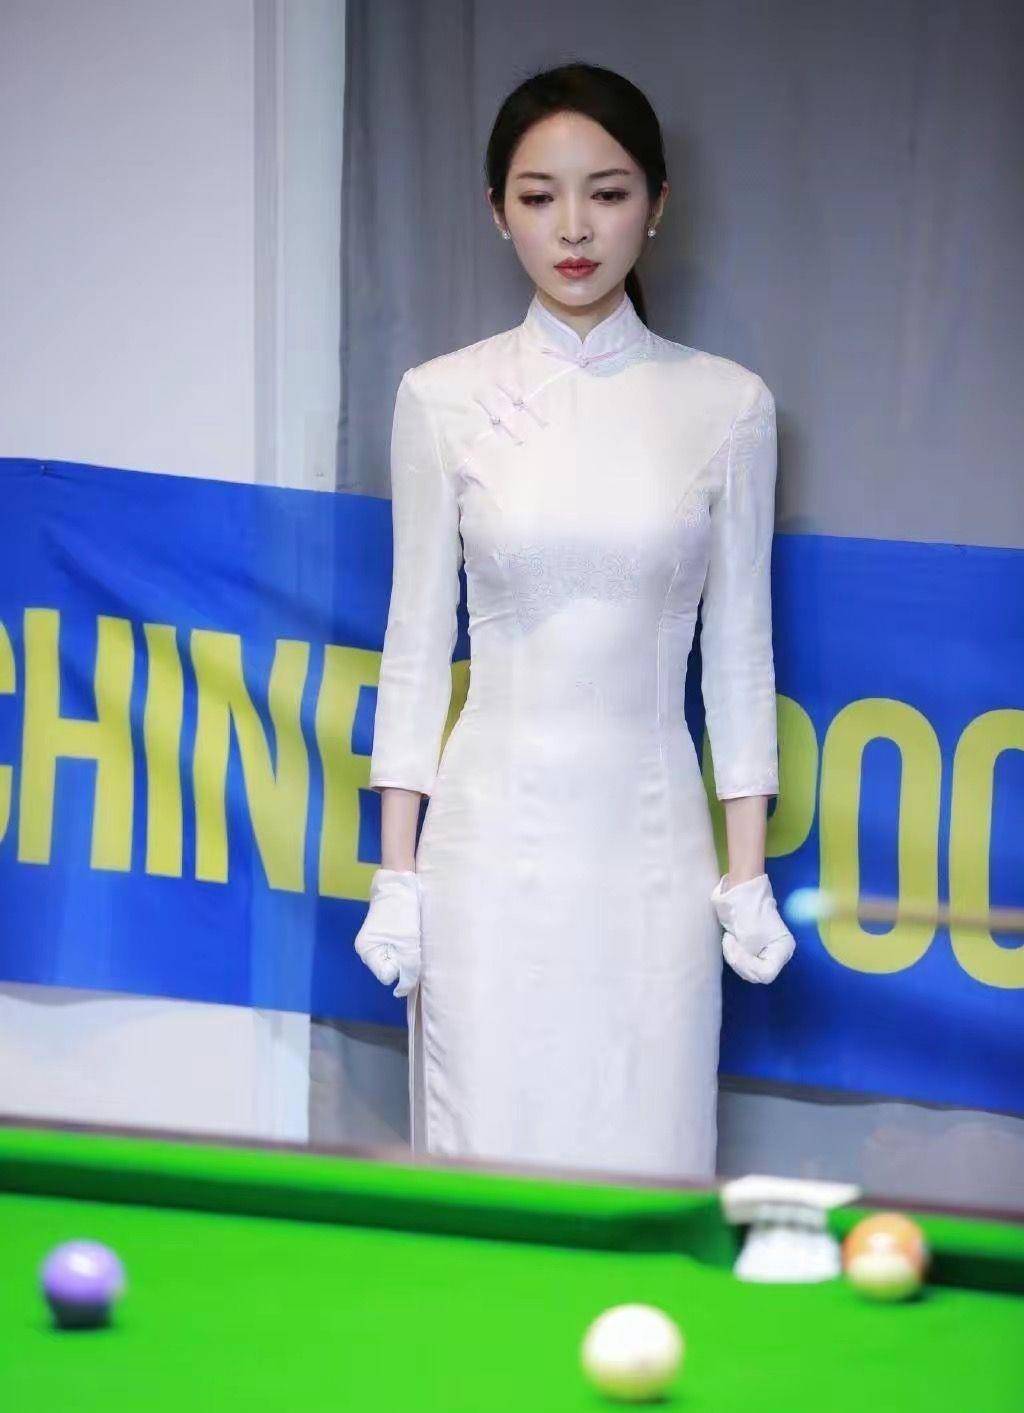 王钟瑶是我见过最美的评委:妩媚的旗袍,优雅的礼服,美丽的风景